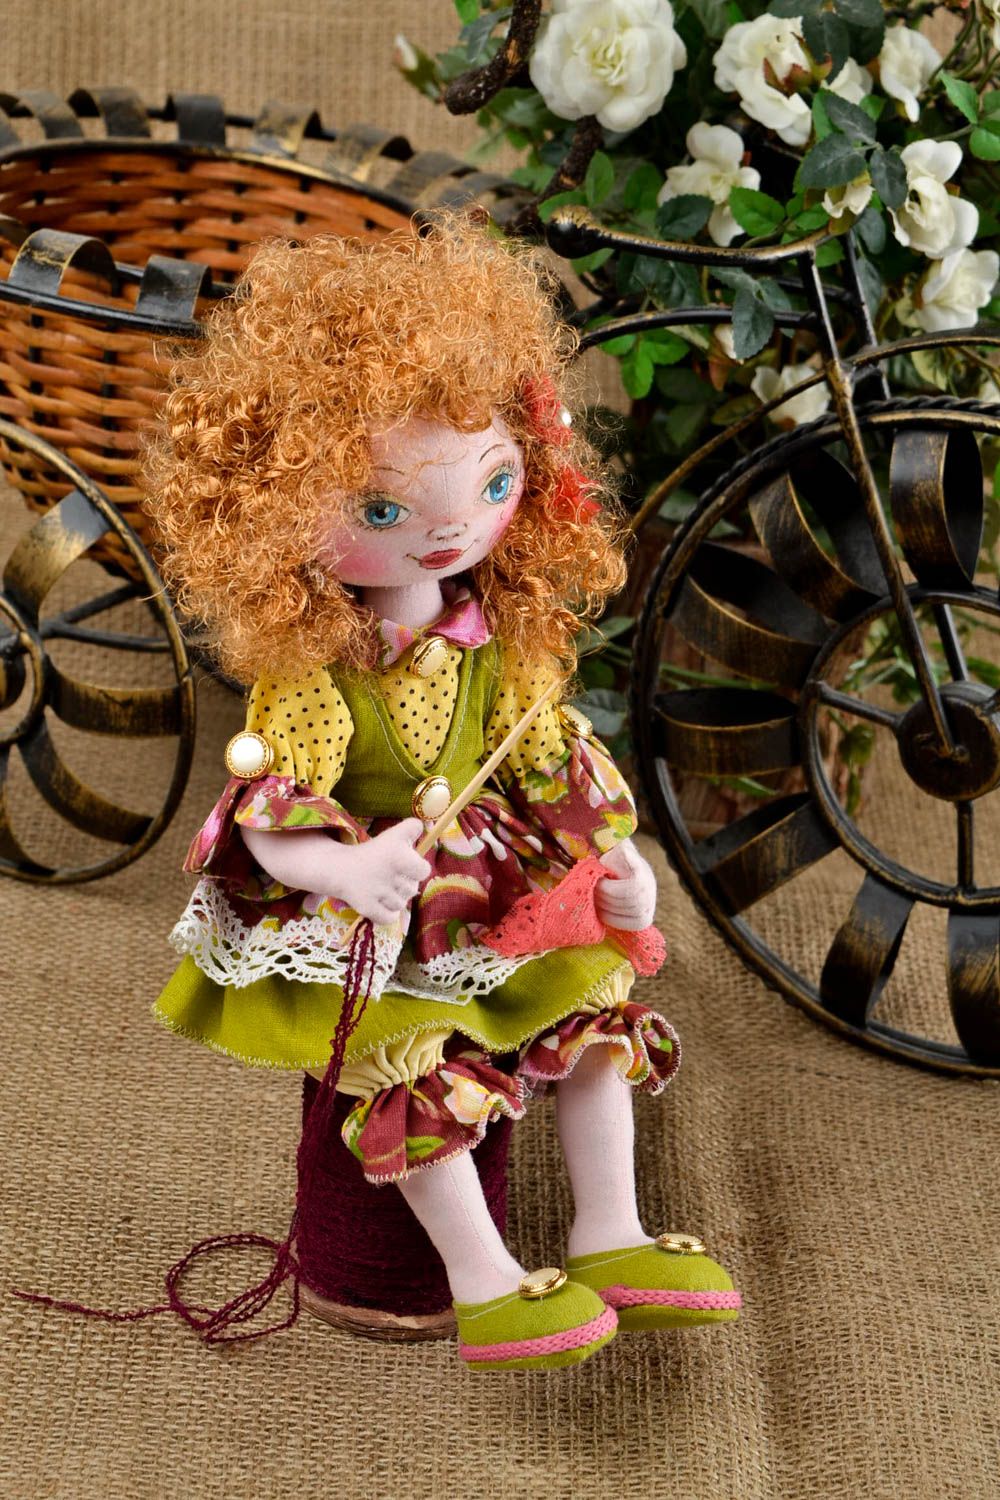 Puppe handgemacht Geschenk Idee schönes Spielzeug Haus Dekoration ungewöhnlich foto 1